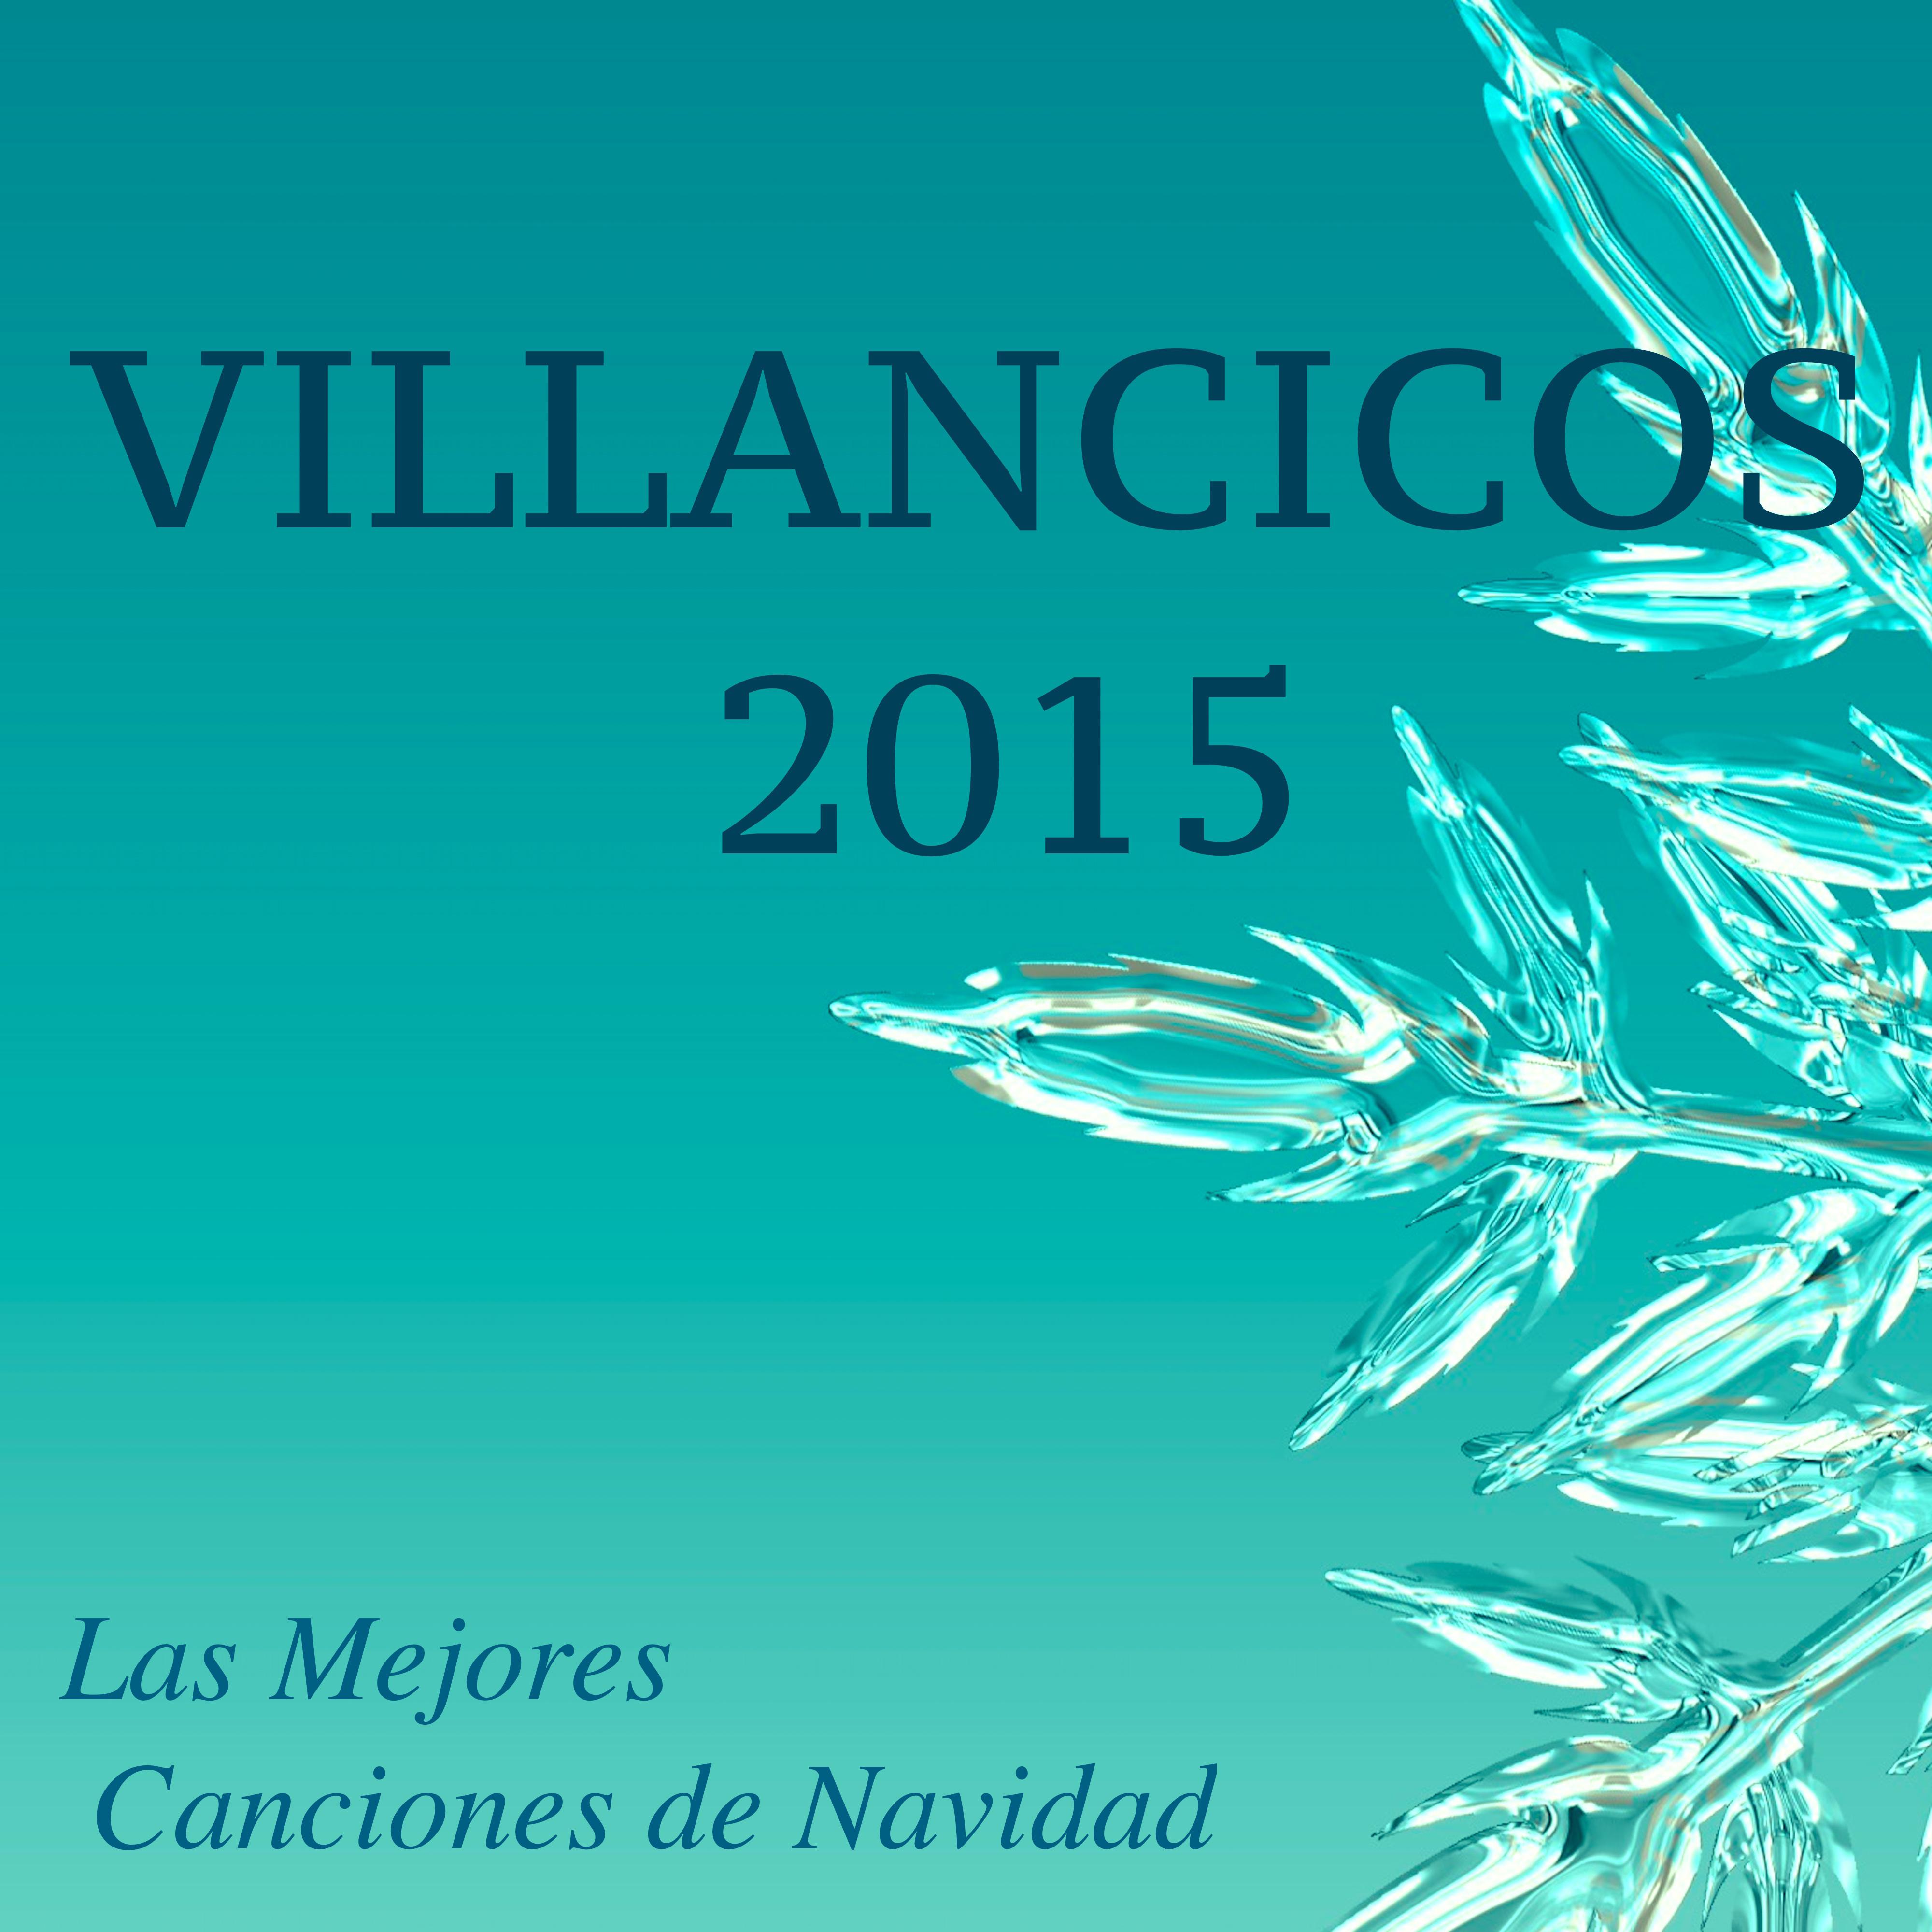 Villancicos 2015 - Las Mejores Canciones de Navidad, Noche de Paz